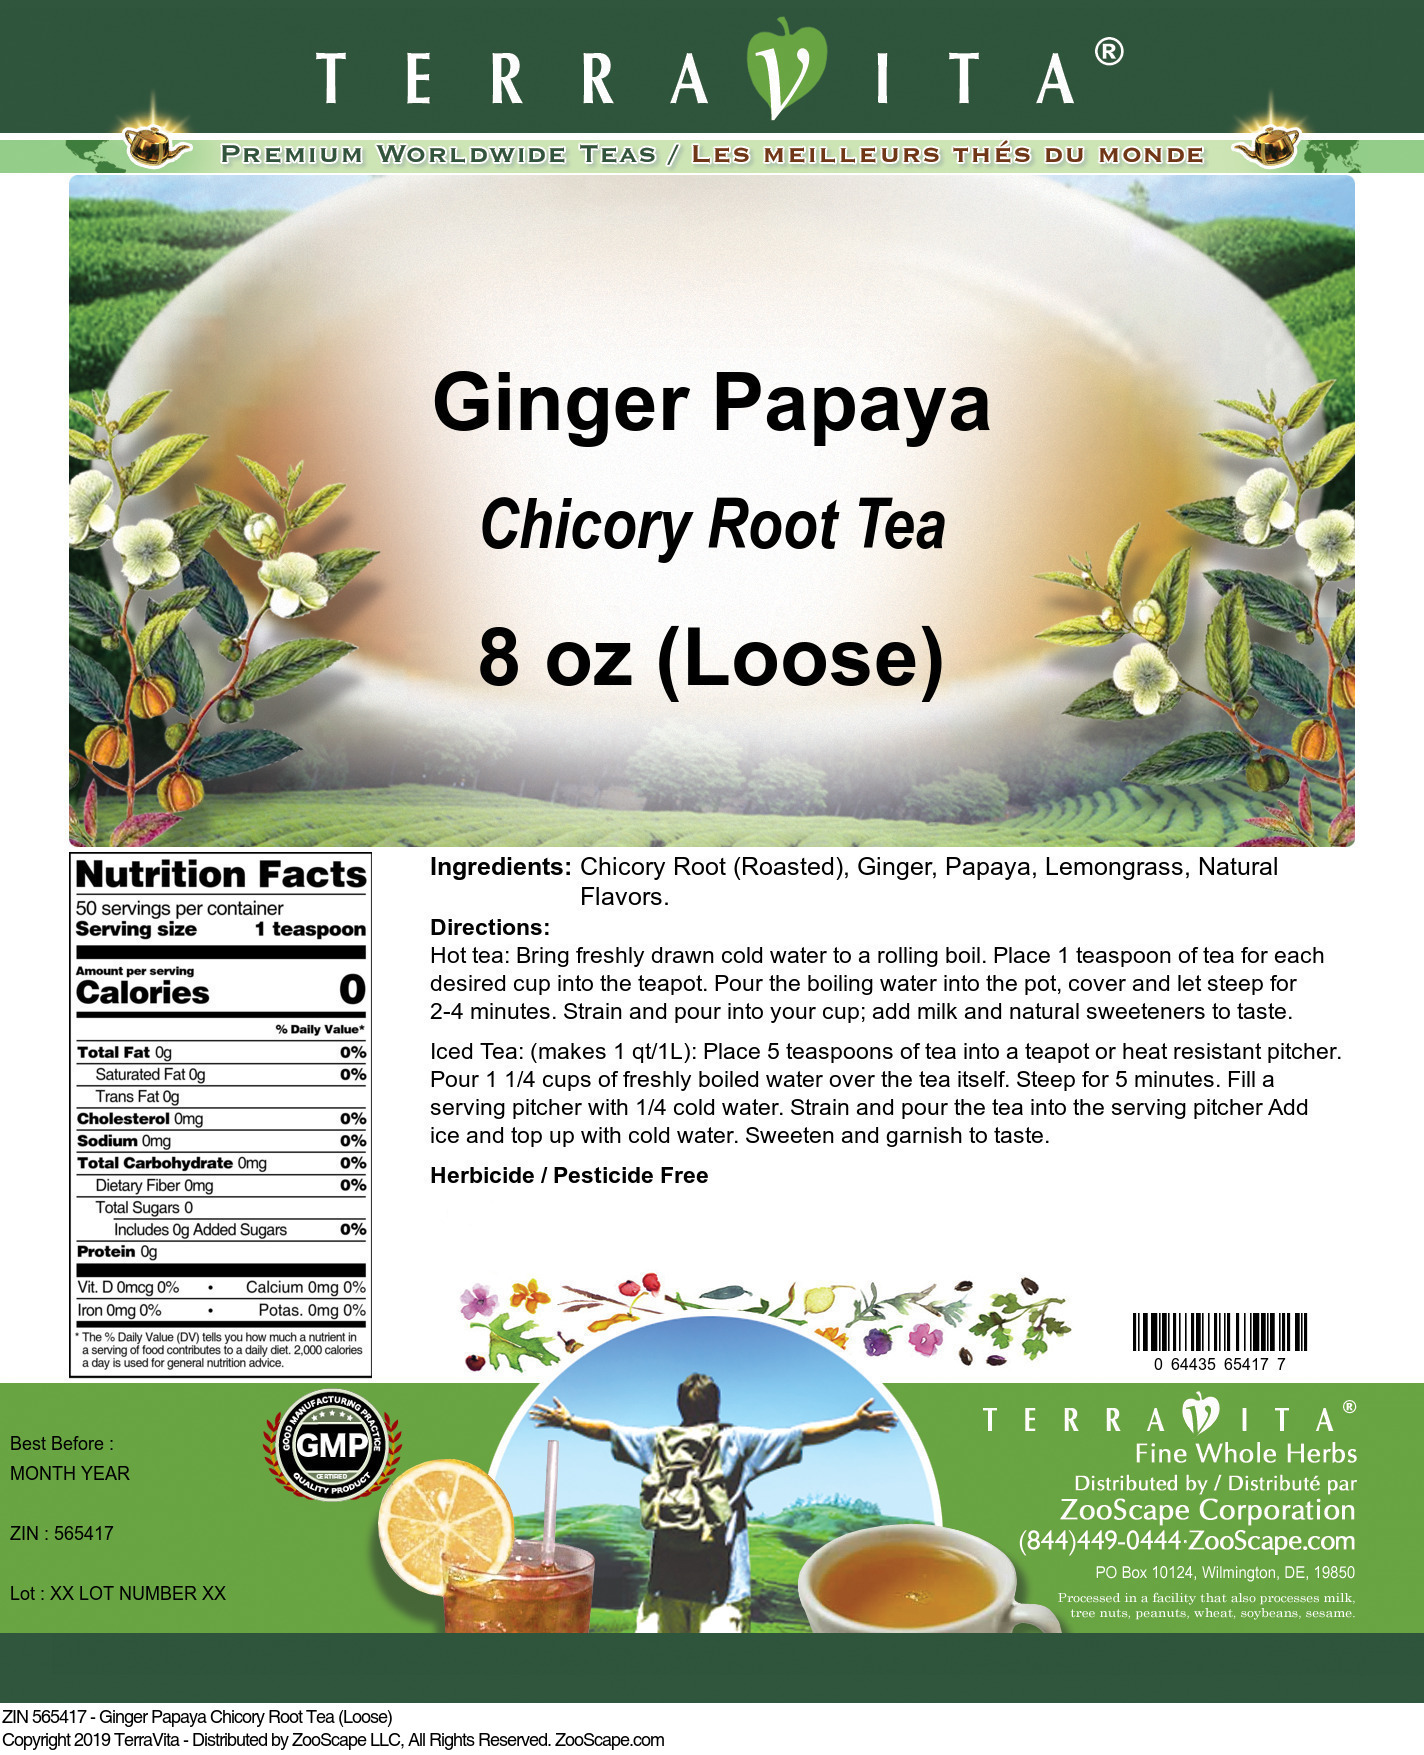 Ginger Papaya Chicory Root Tea (Loose) - Label